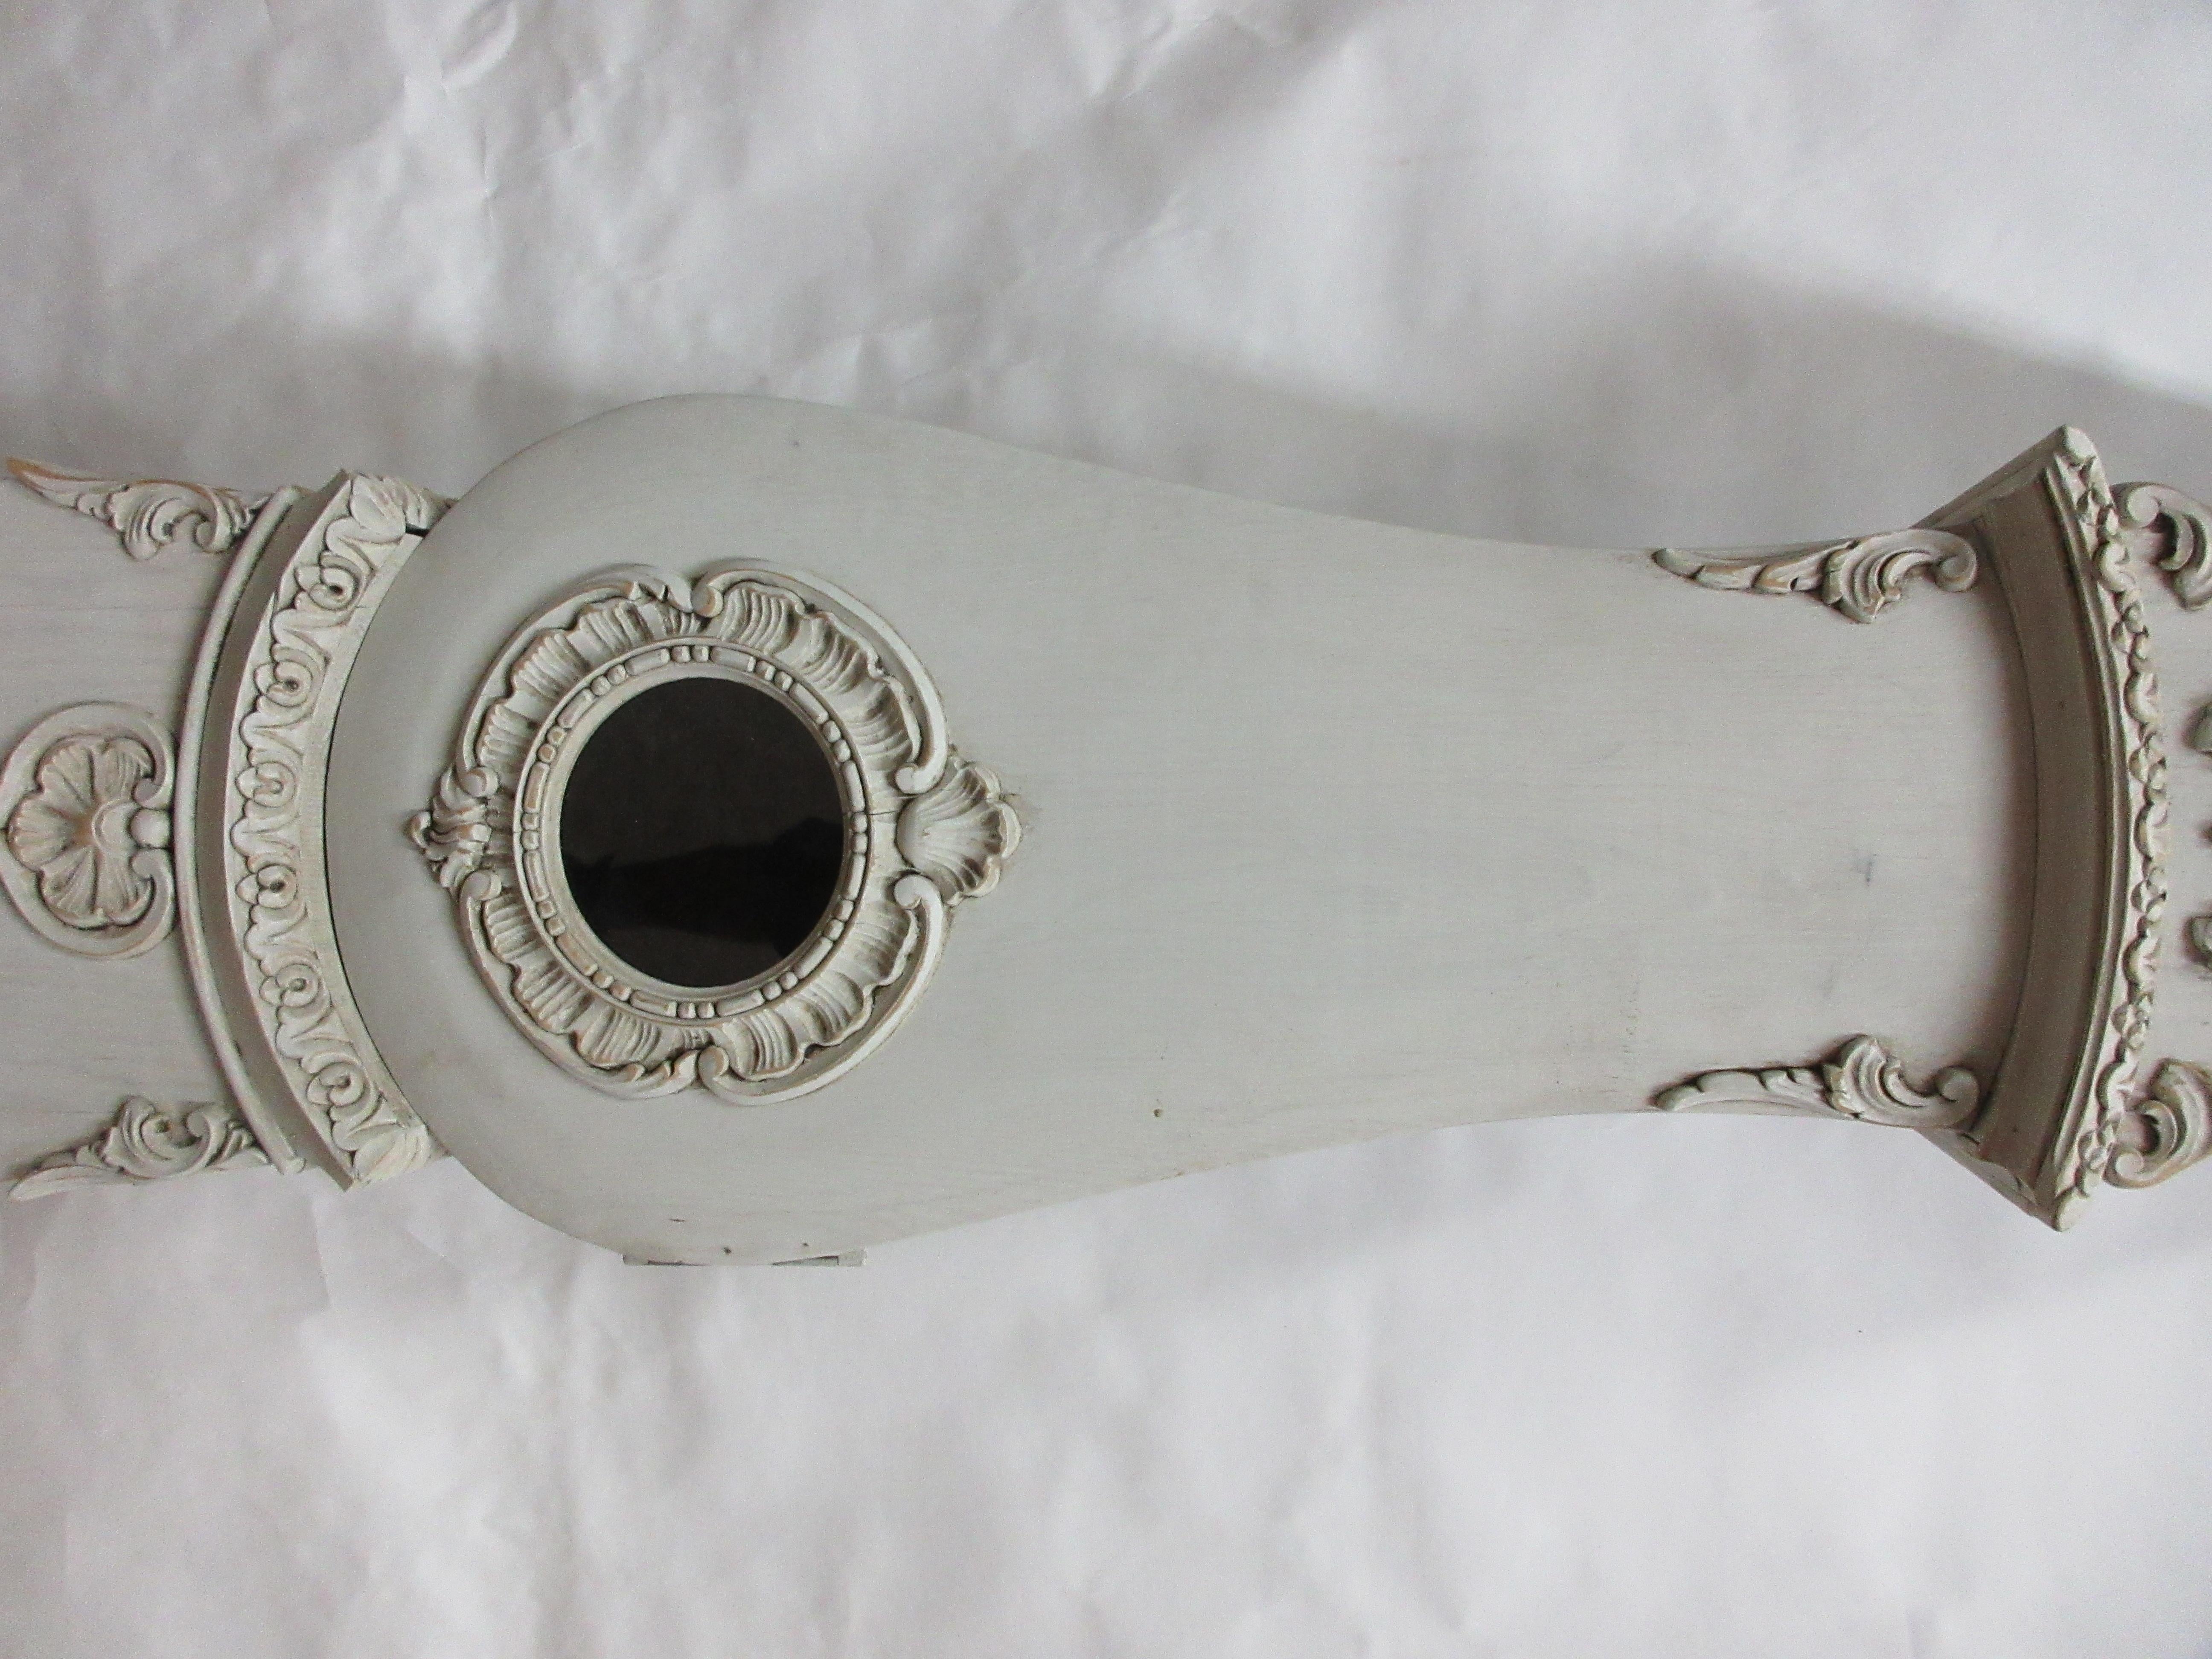 Voici une horloge Mora suédoise unique, modèle Rococo. Elle a été restaurée et repeinte avec de la peinture au lait 